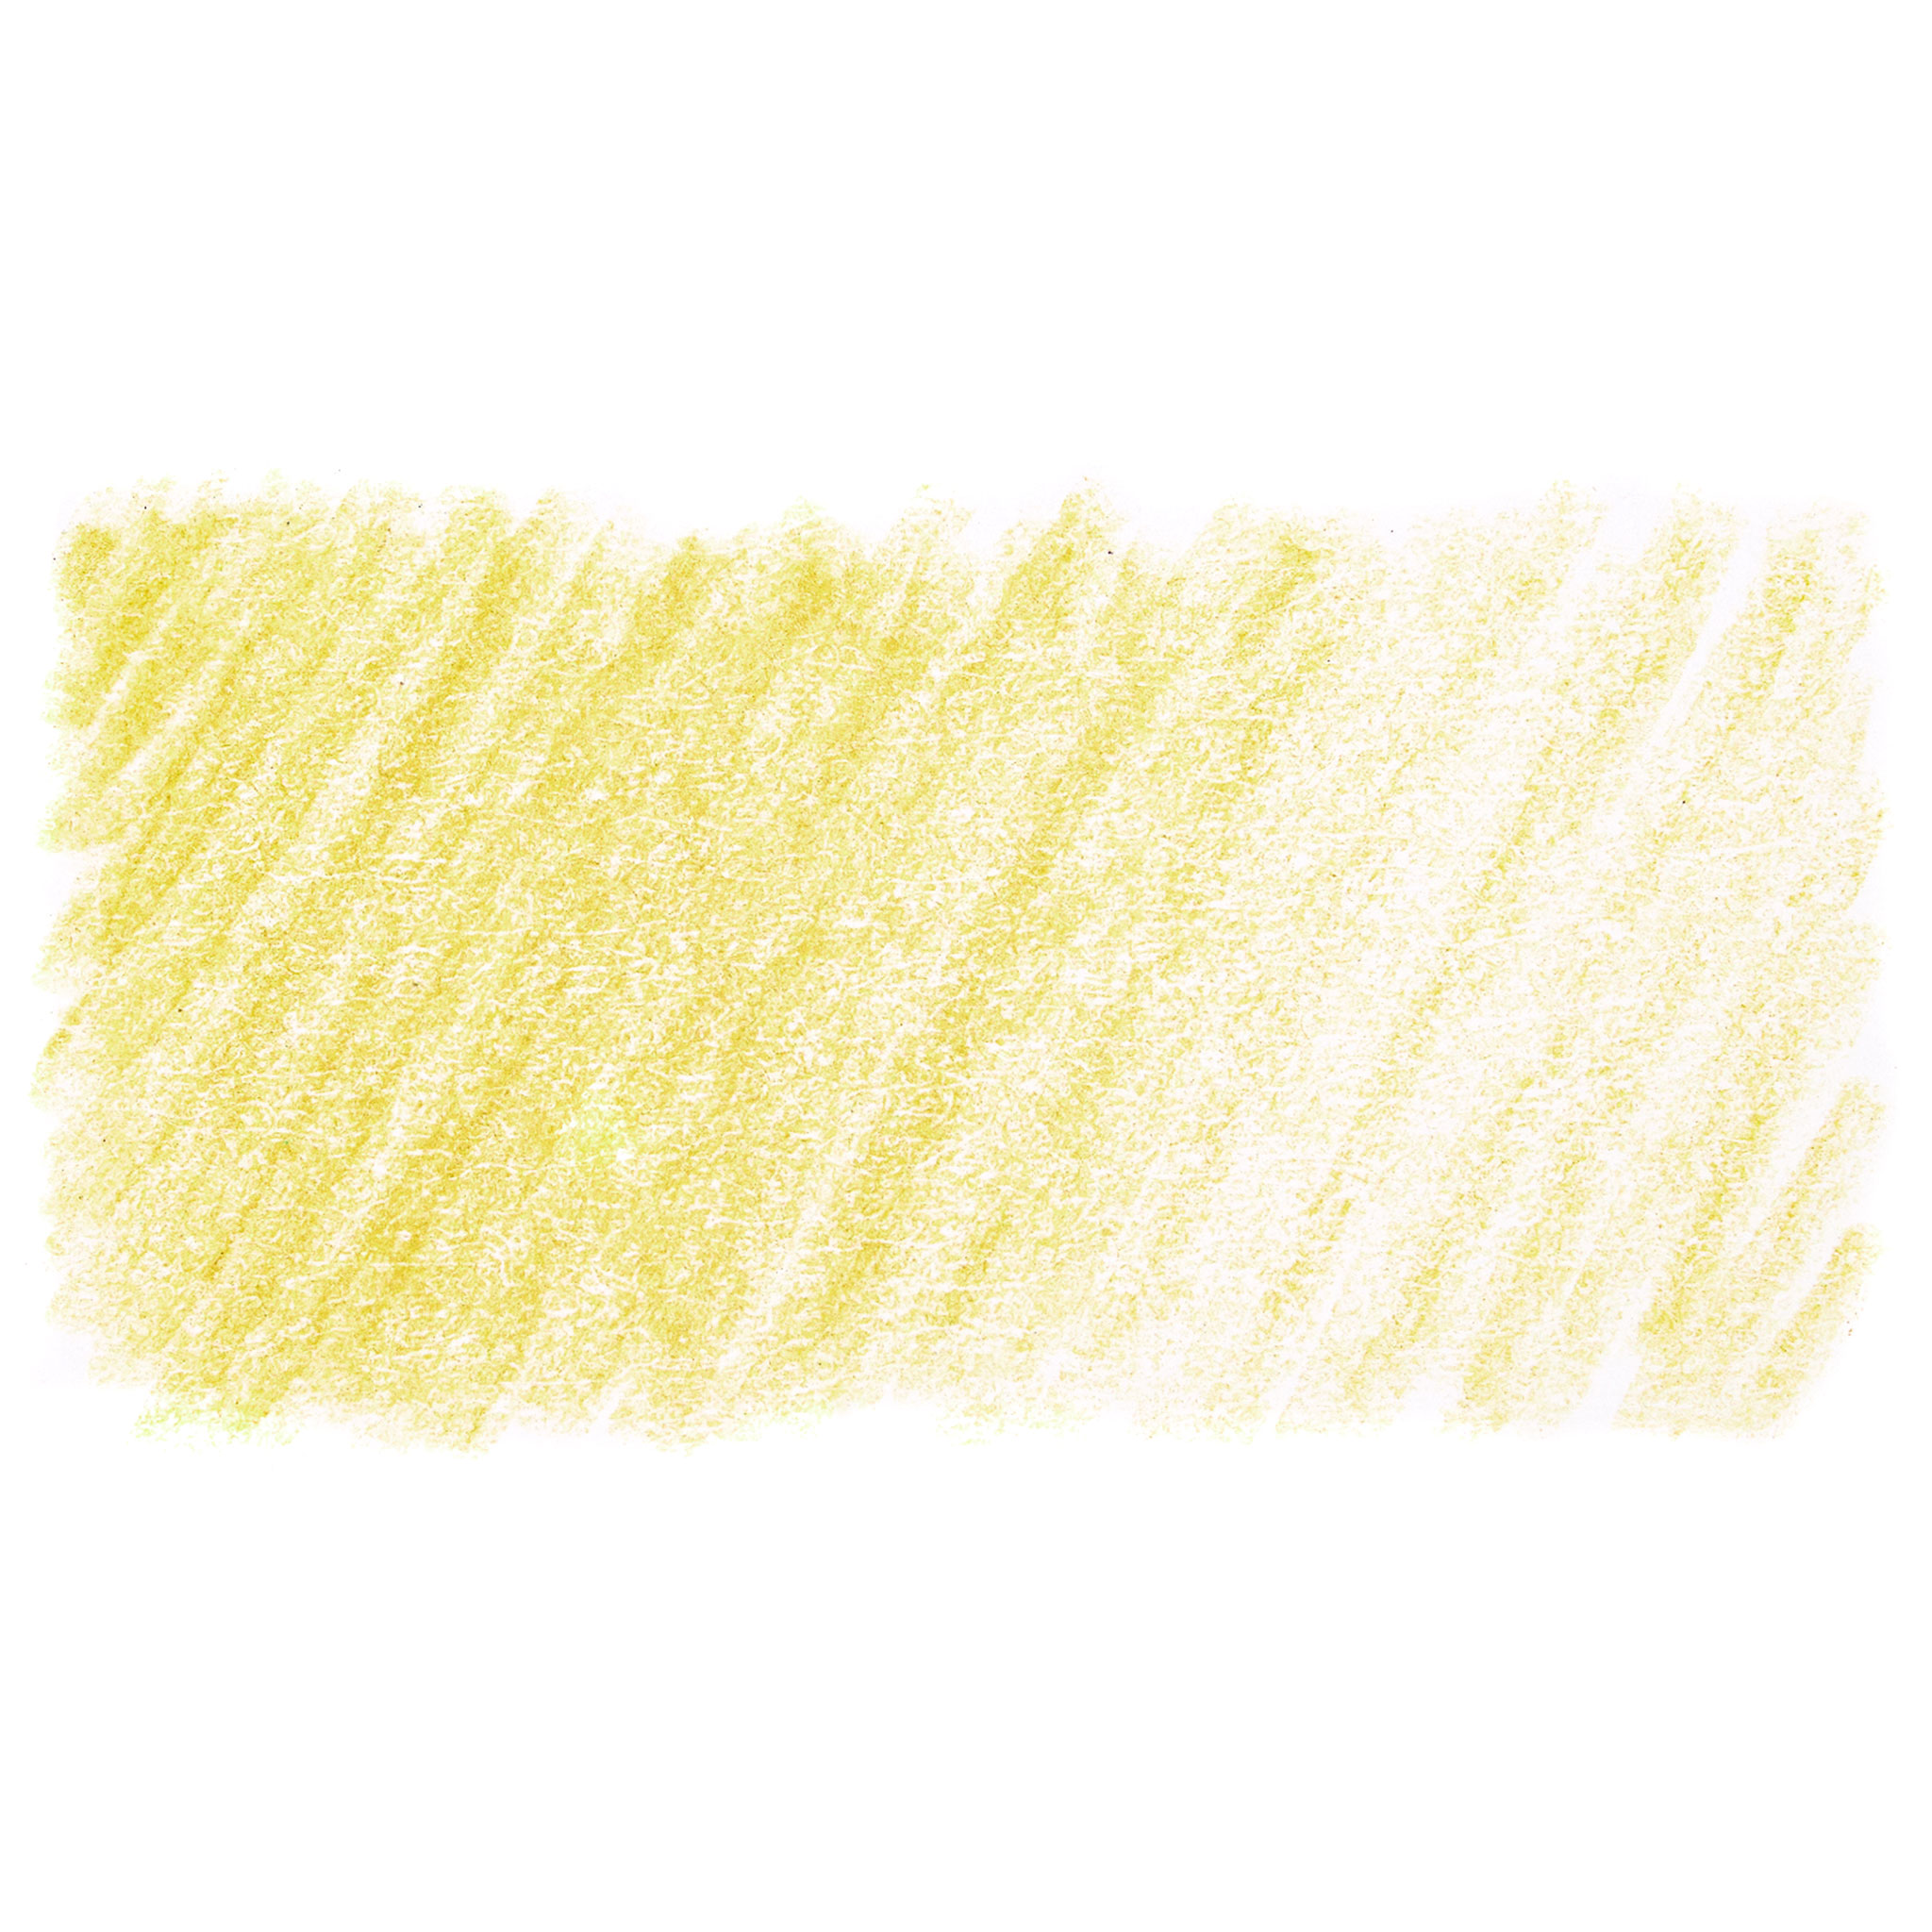 dw2306028-crayon-de-couleur-chromaflow-yellow-citrus derwent-fee